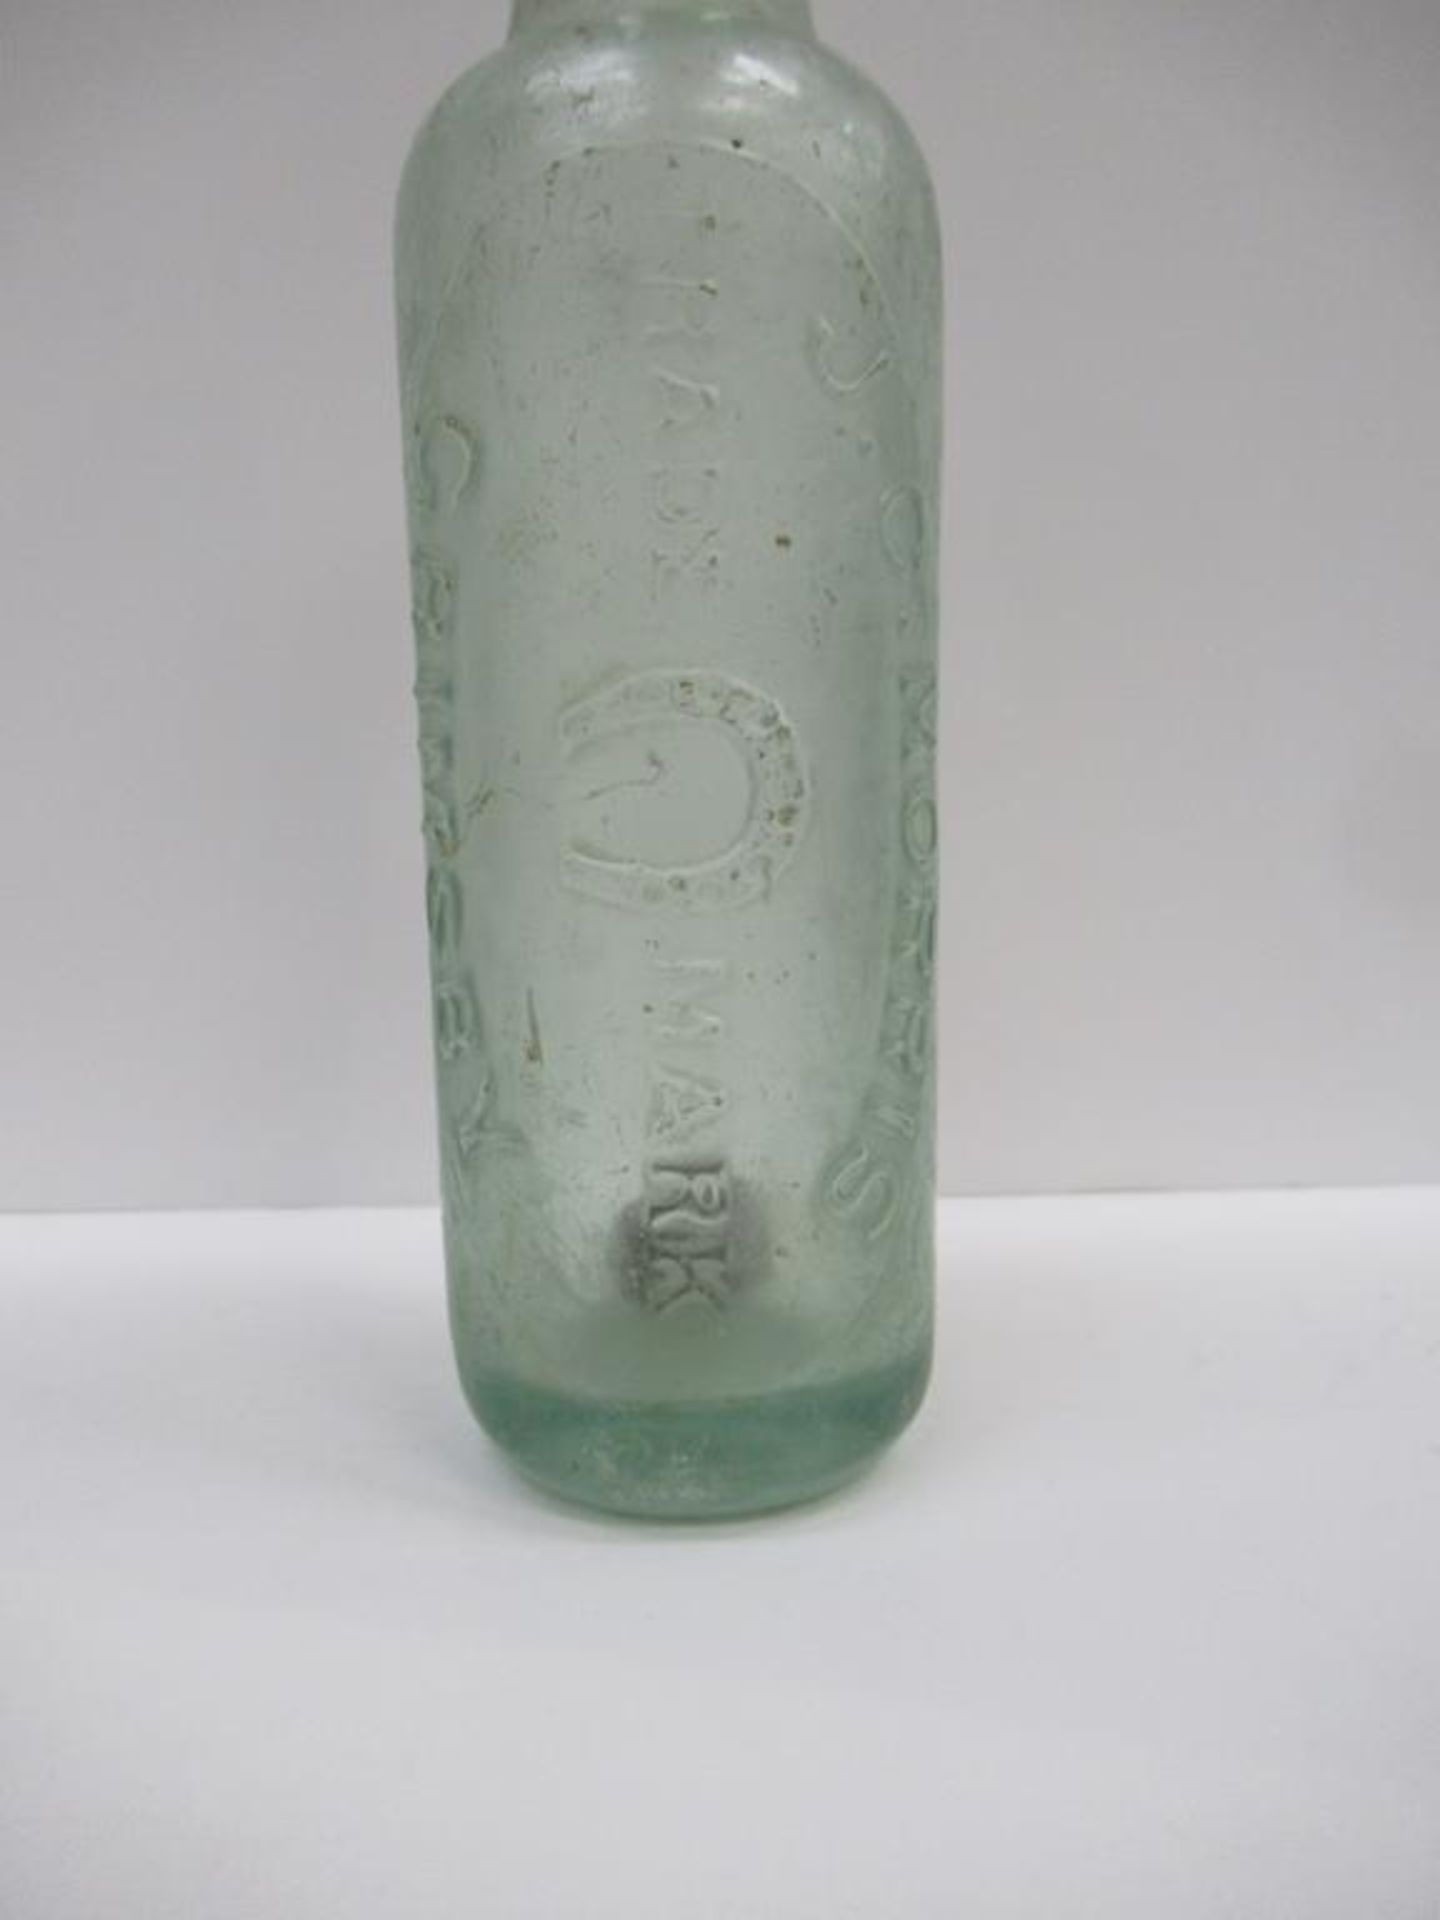 6x Grimsby Morris & Saweard (4) and J.C. Morris (2) bottles - Image 21 of 21